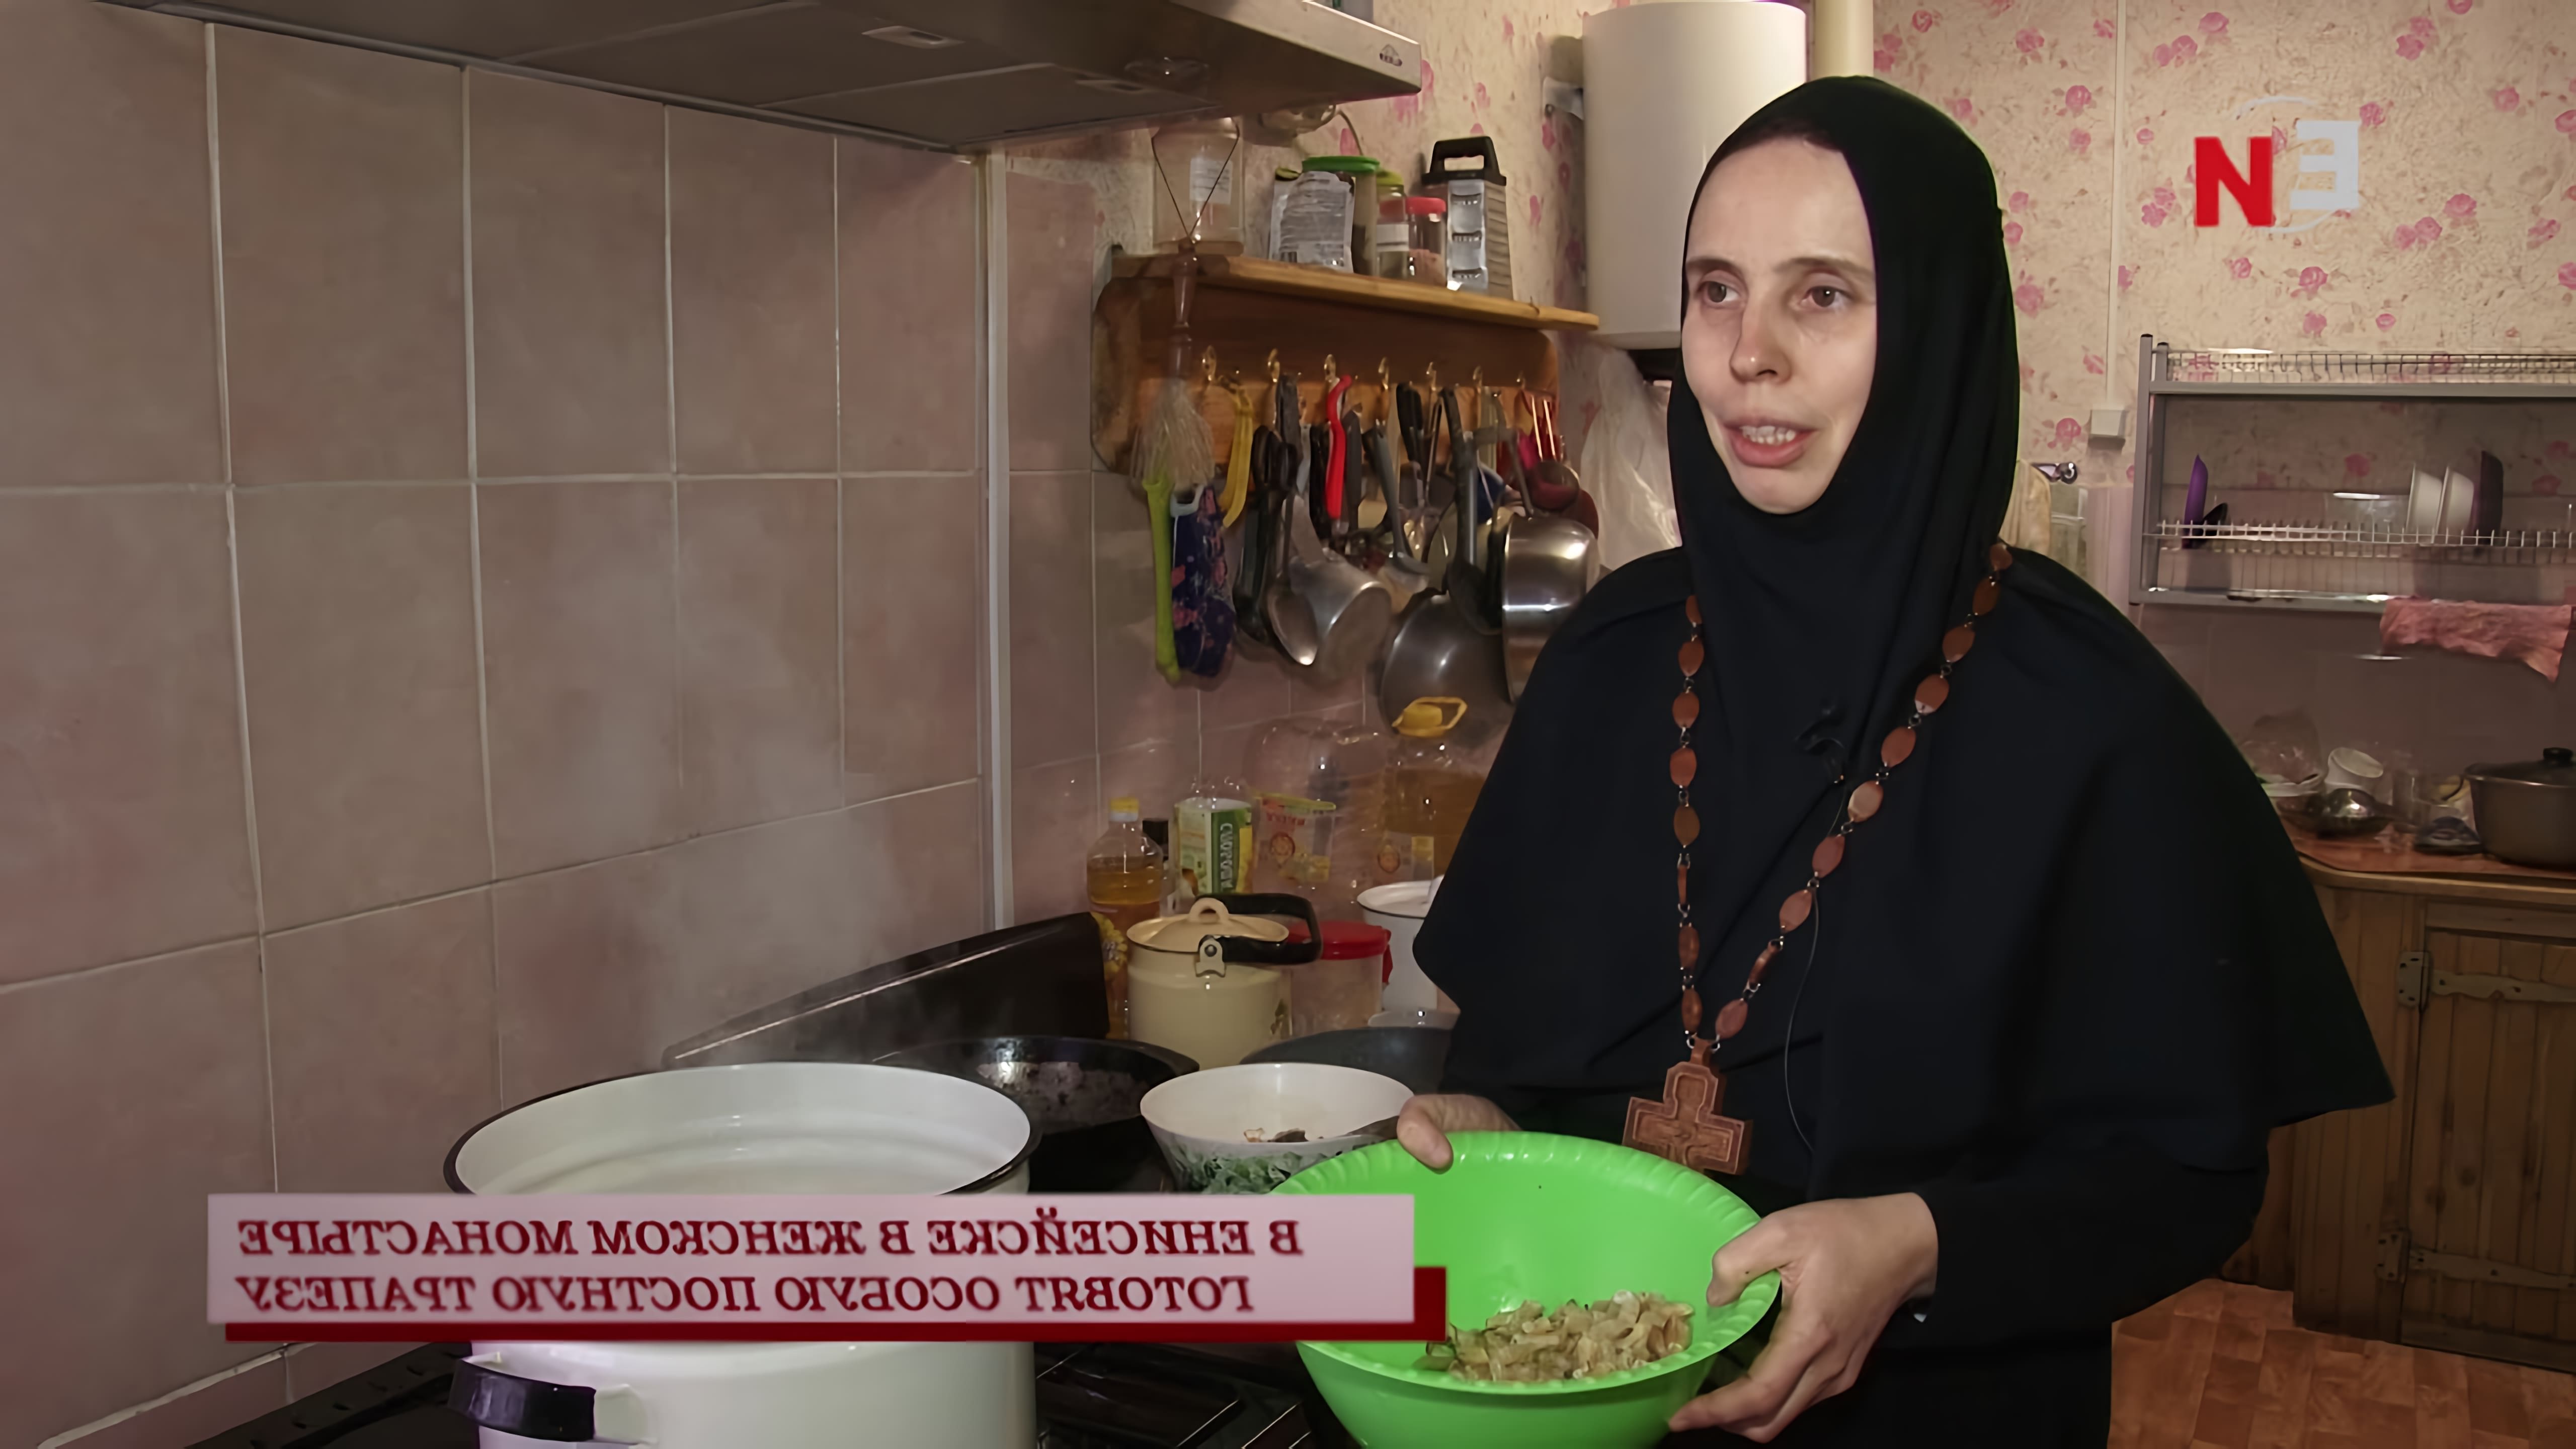 В видео рассказывается о том, как в Иверском женском монастыре в Енисейске готовят особую постную трапезу